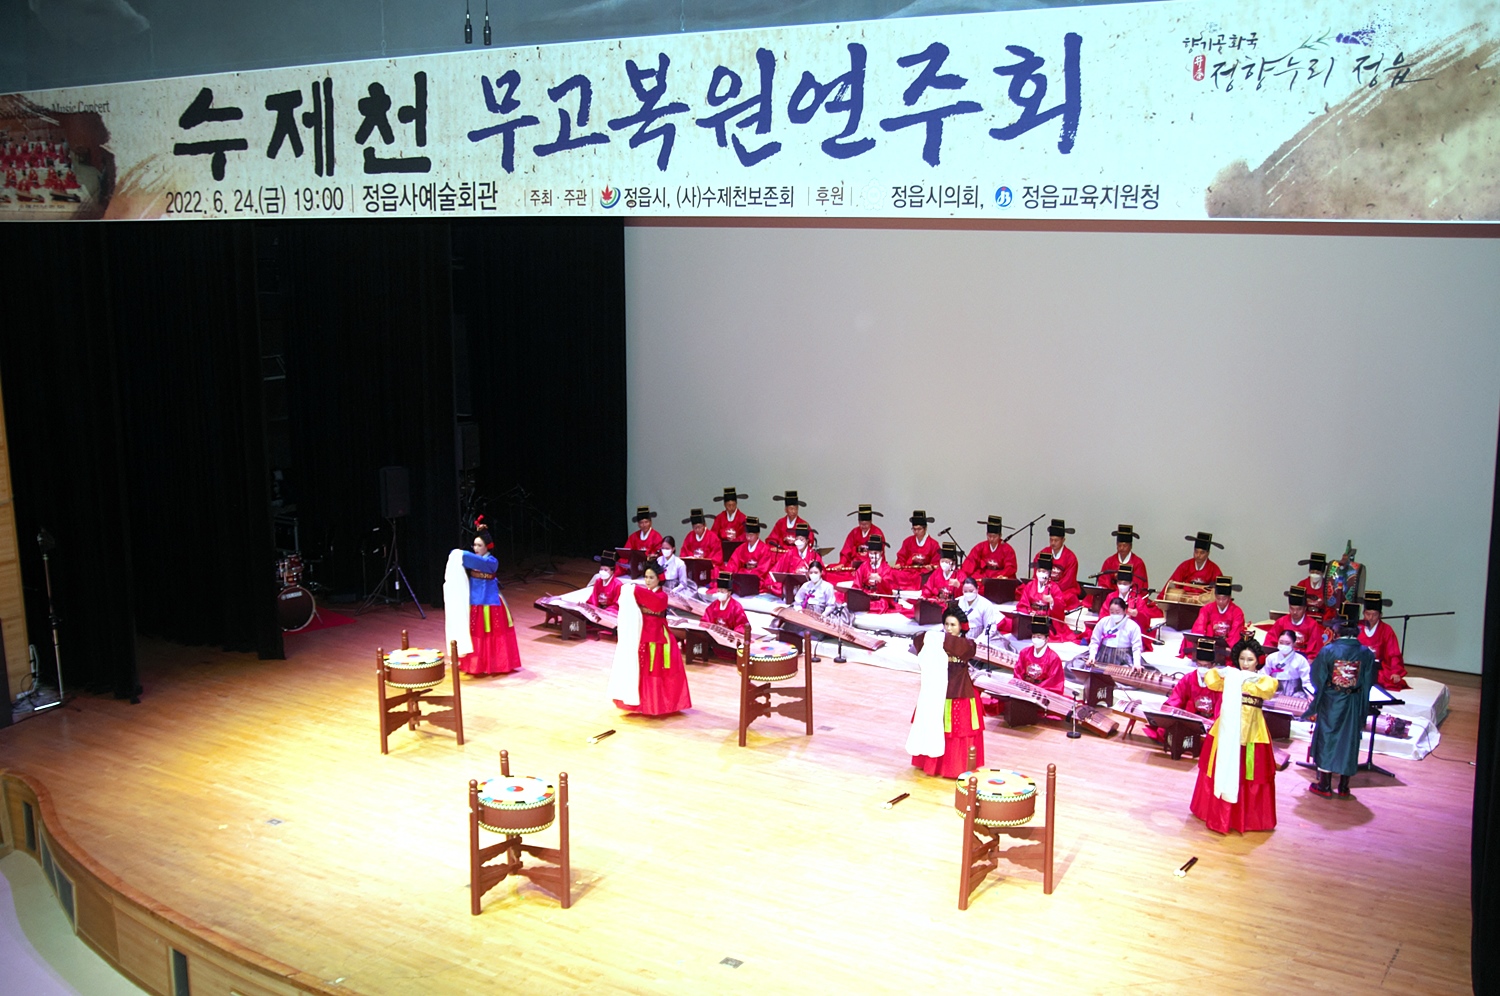 24일, 정읍사예술회관서 수제천 무고 복원 연주회 열려